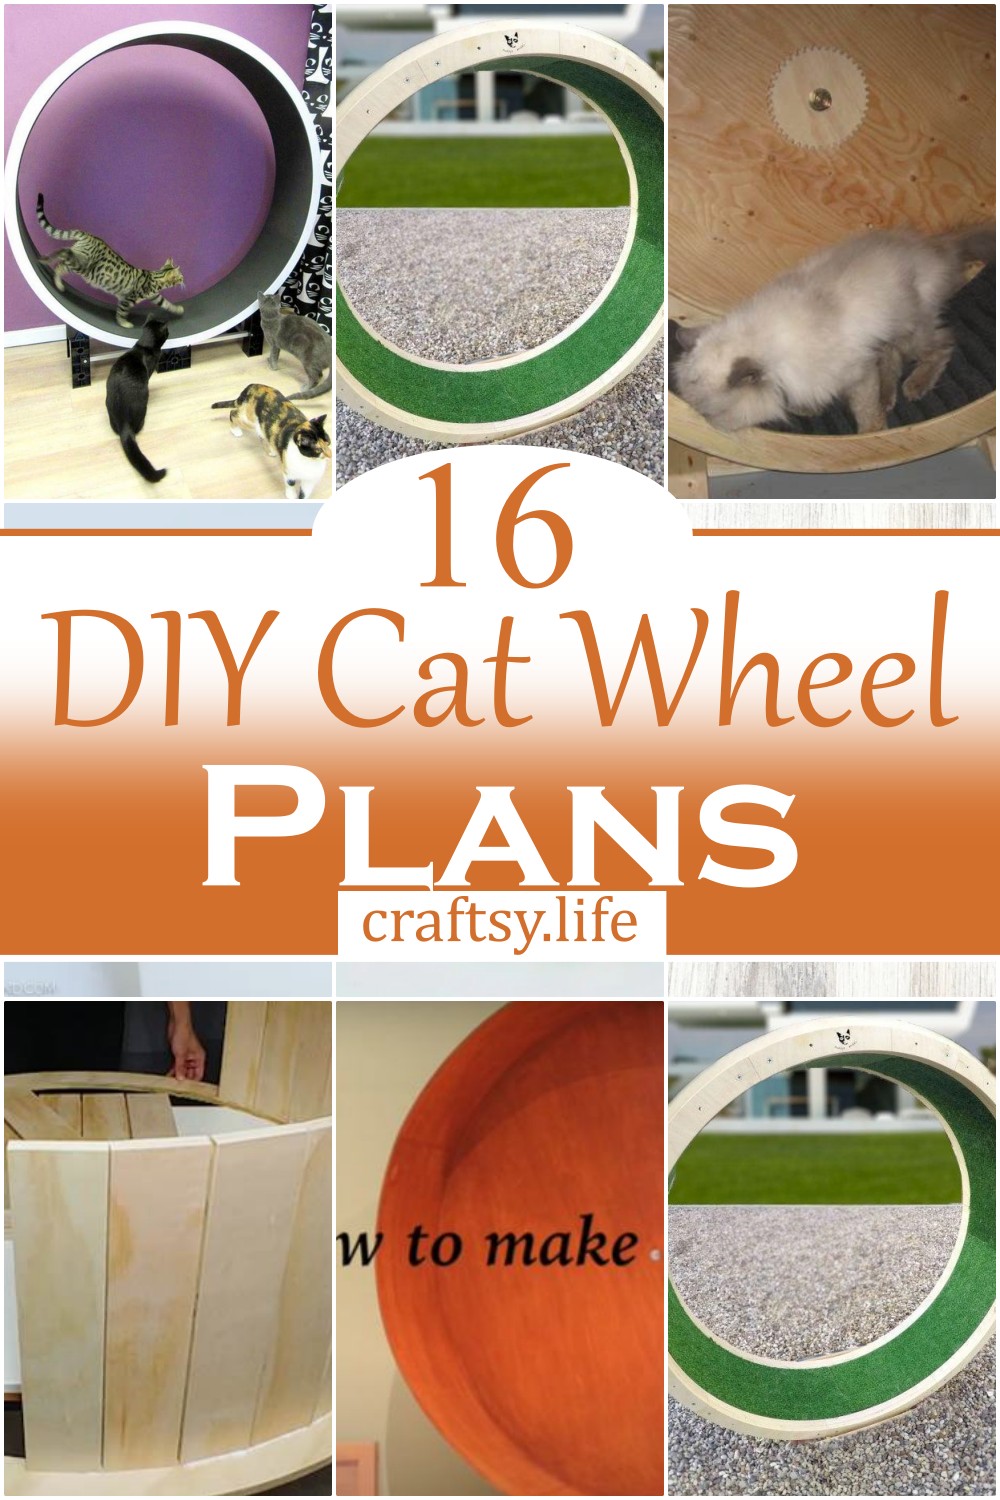 DIY Cat Wheel Plans